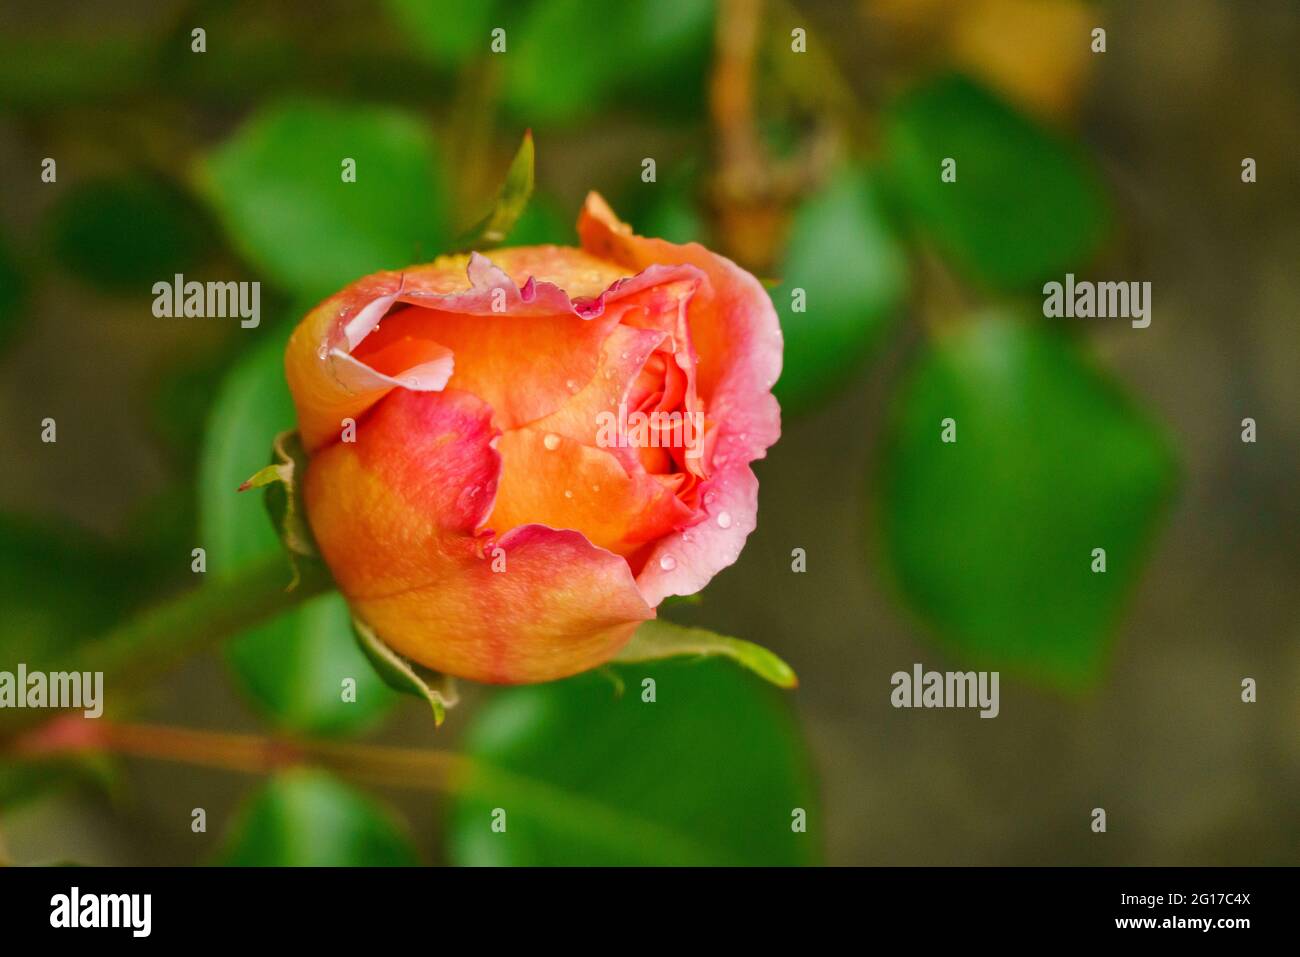 rote Rose am Rosenstock vor einer Hauswand, orange, rosa, gelb mehrfarbig im grünen Blättermeer. Morgentau auf Rosenknospe. Symbol für Liebe und Treue Stockfoto